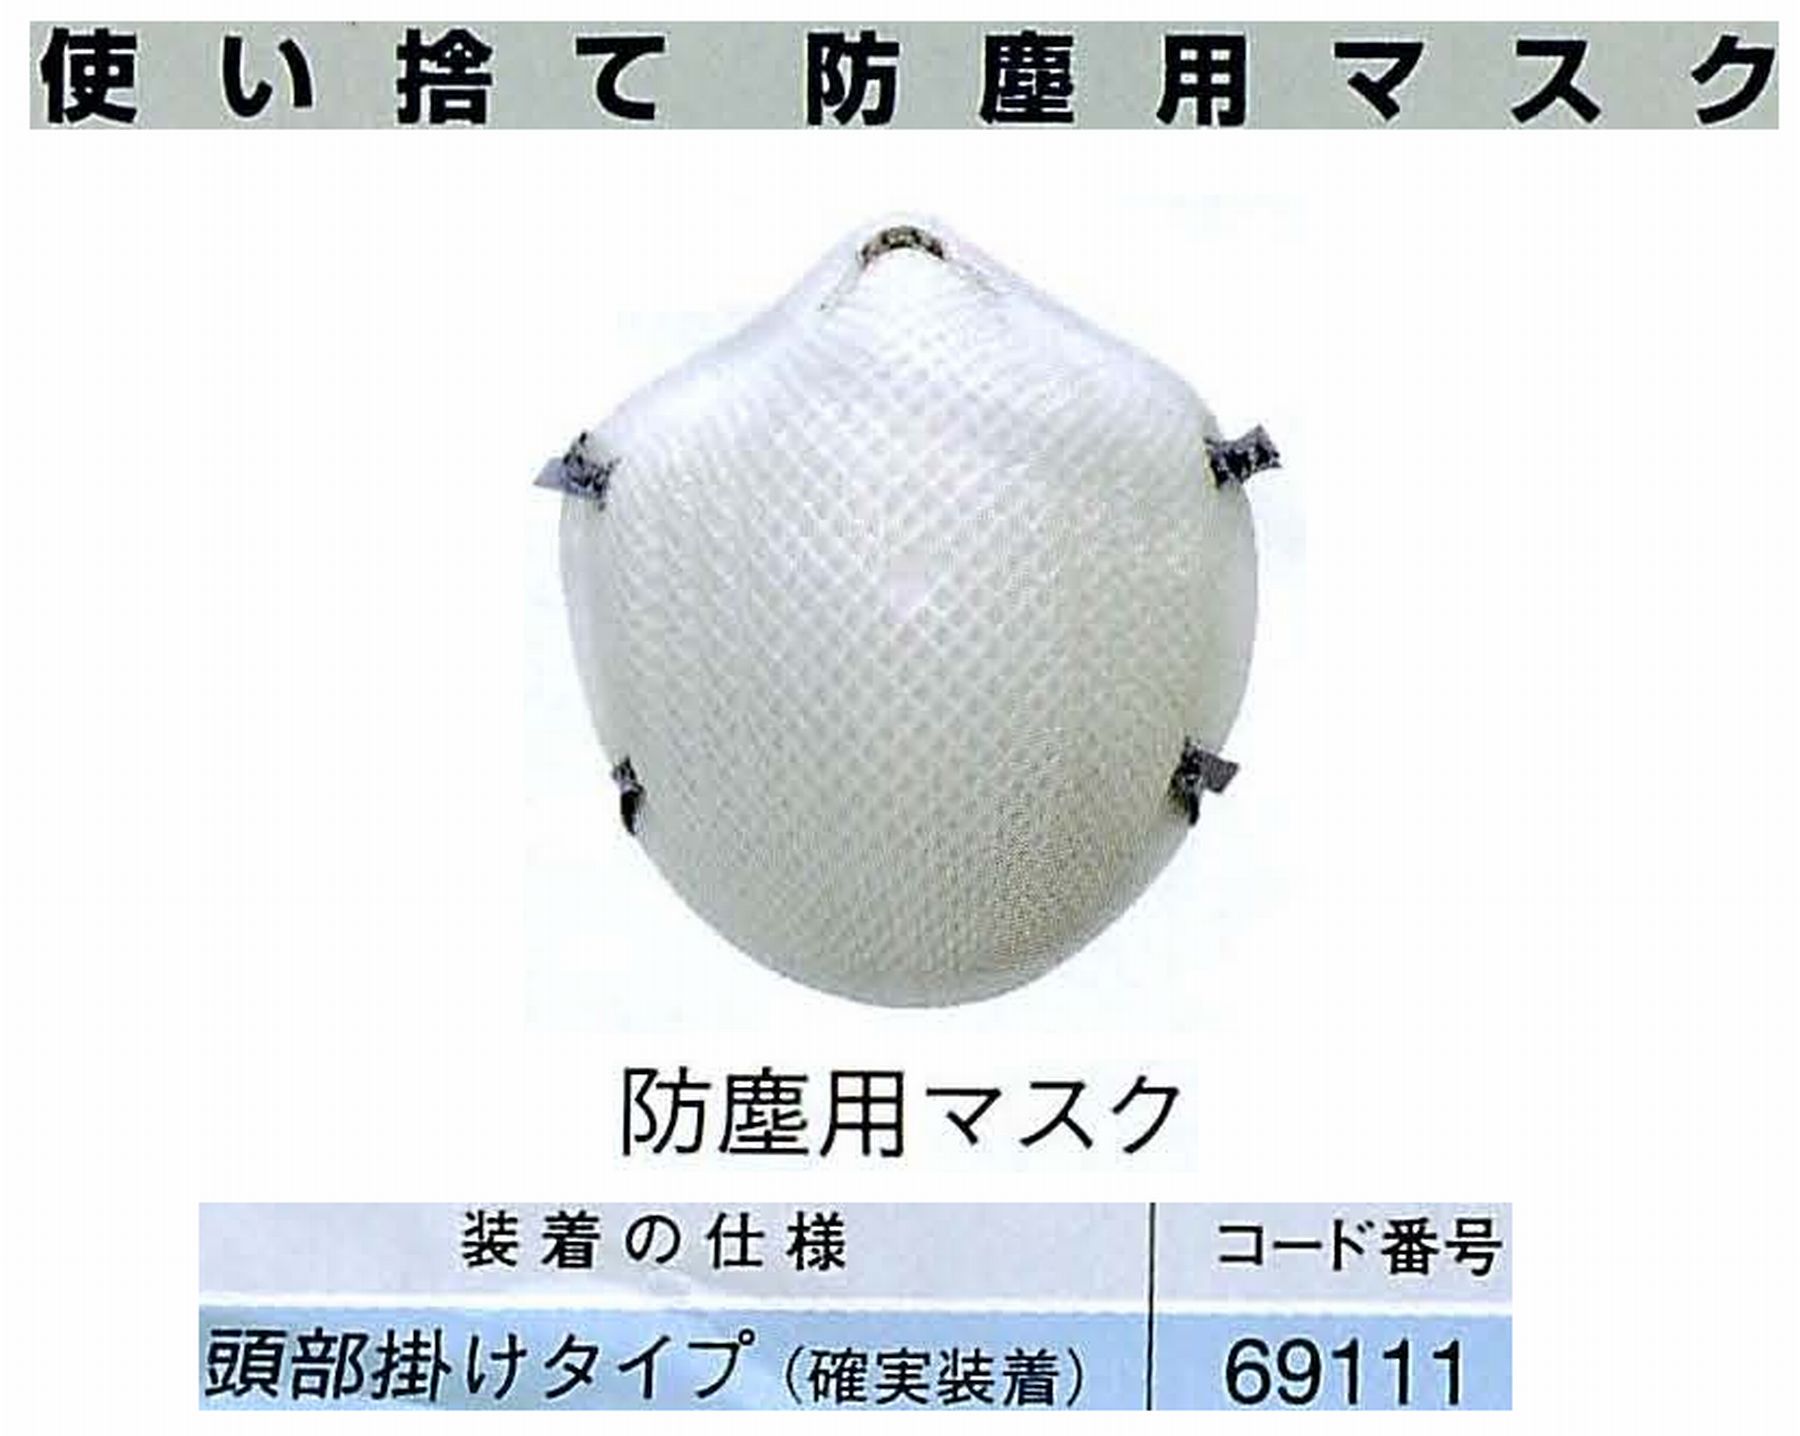 ナカニシ/NAKANISHI 防護用品 使い捨て防塵用マスク 69111